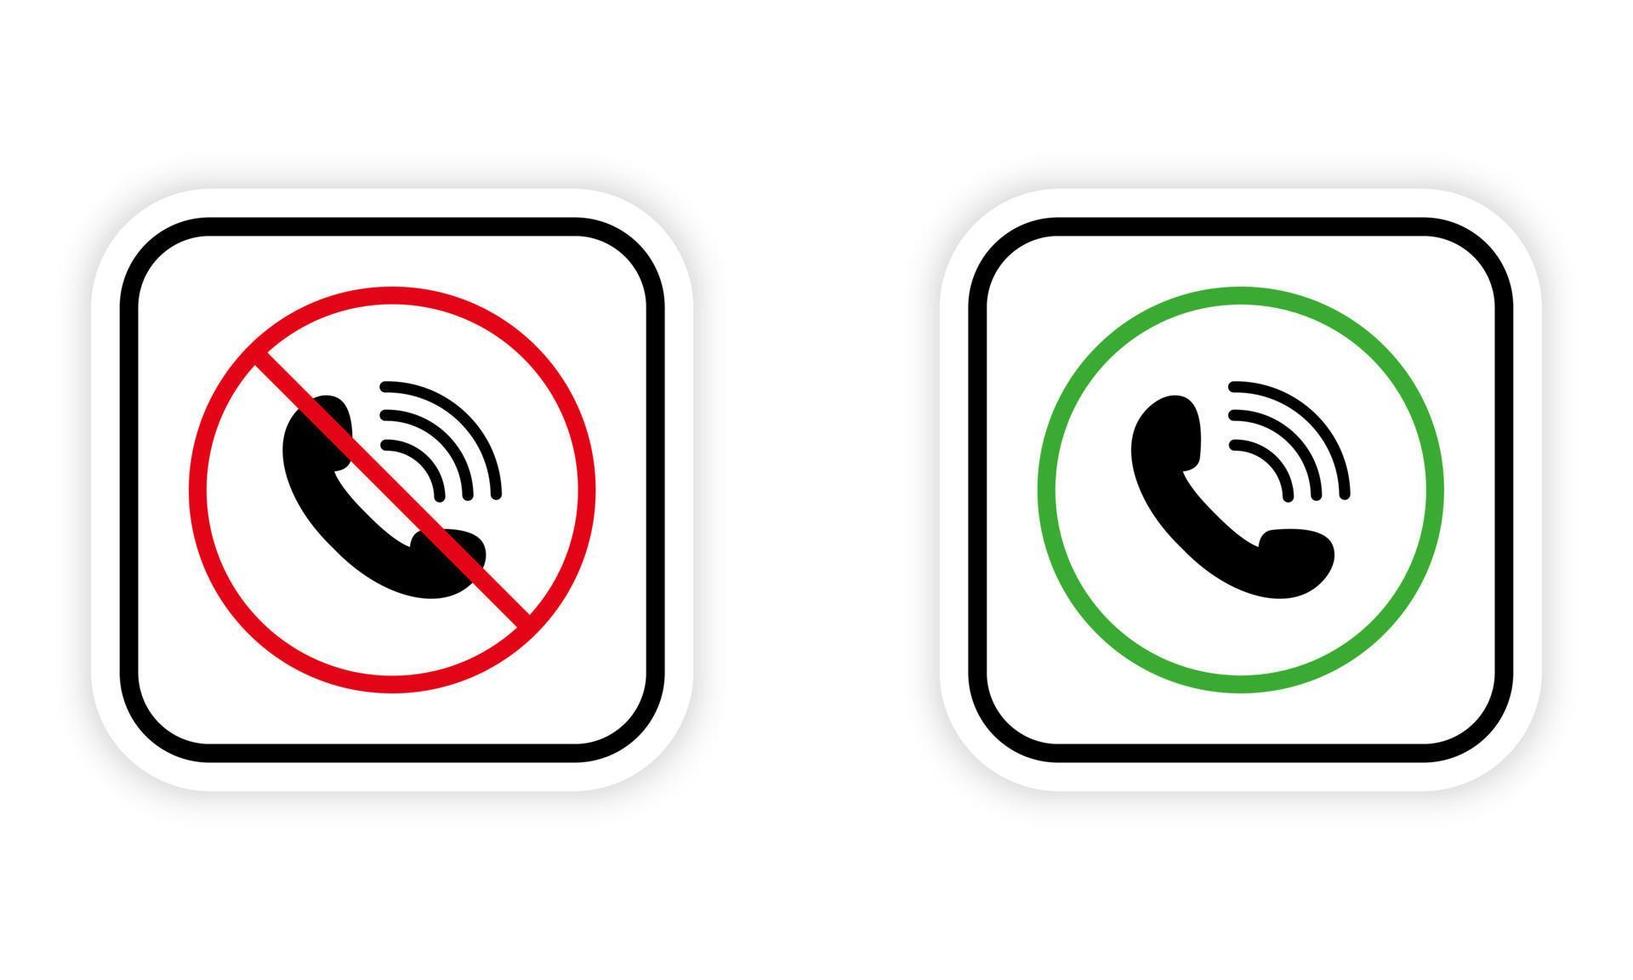 telefonlur ring upp svart silhuett ikon uppsättning. acceptera prata tillåta område grön cirkel symbol. inte motta inkommande ring upp mobil telefon röd förbjuden runda tecken. varning ha kvar tystnad. isolerat vektor illustration.